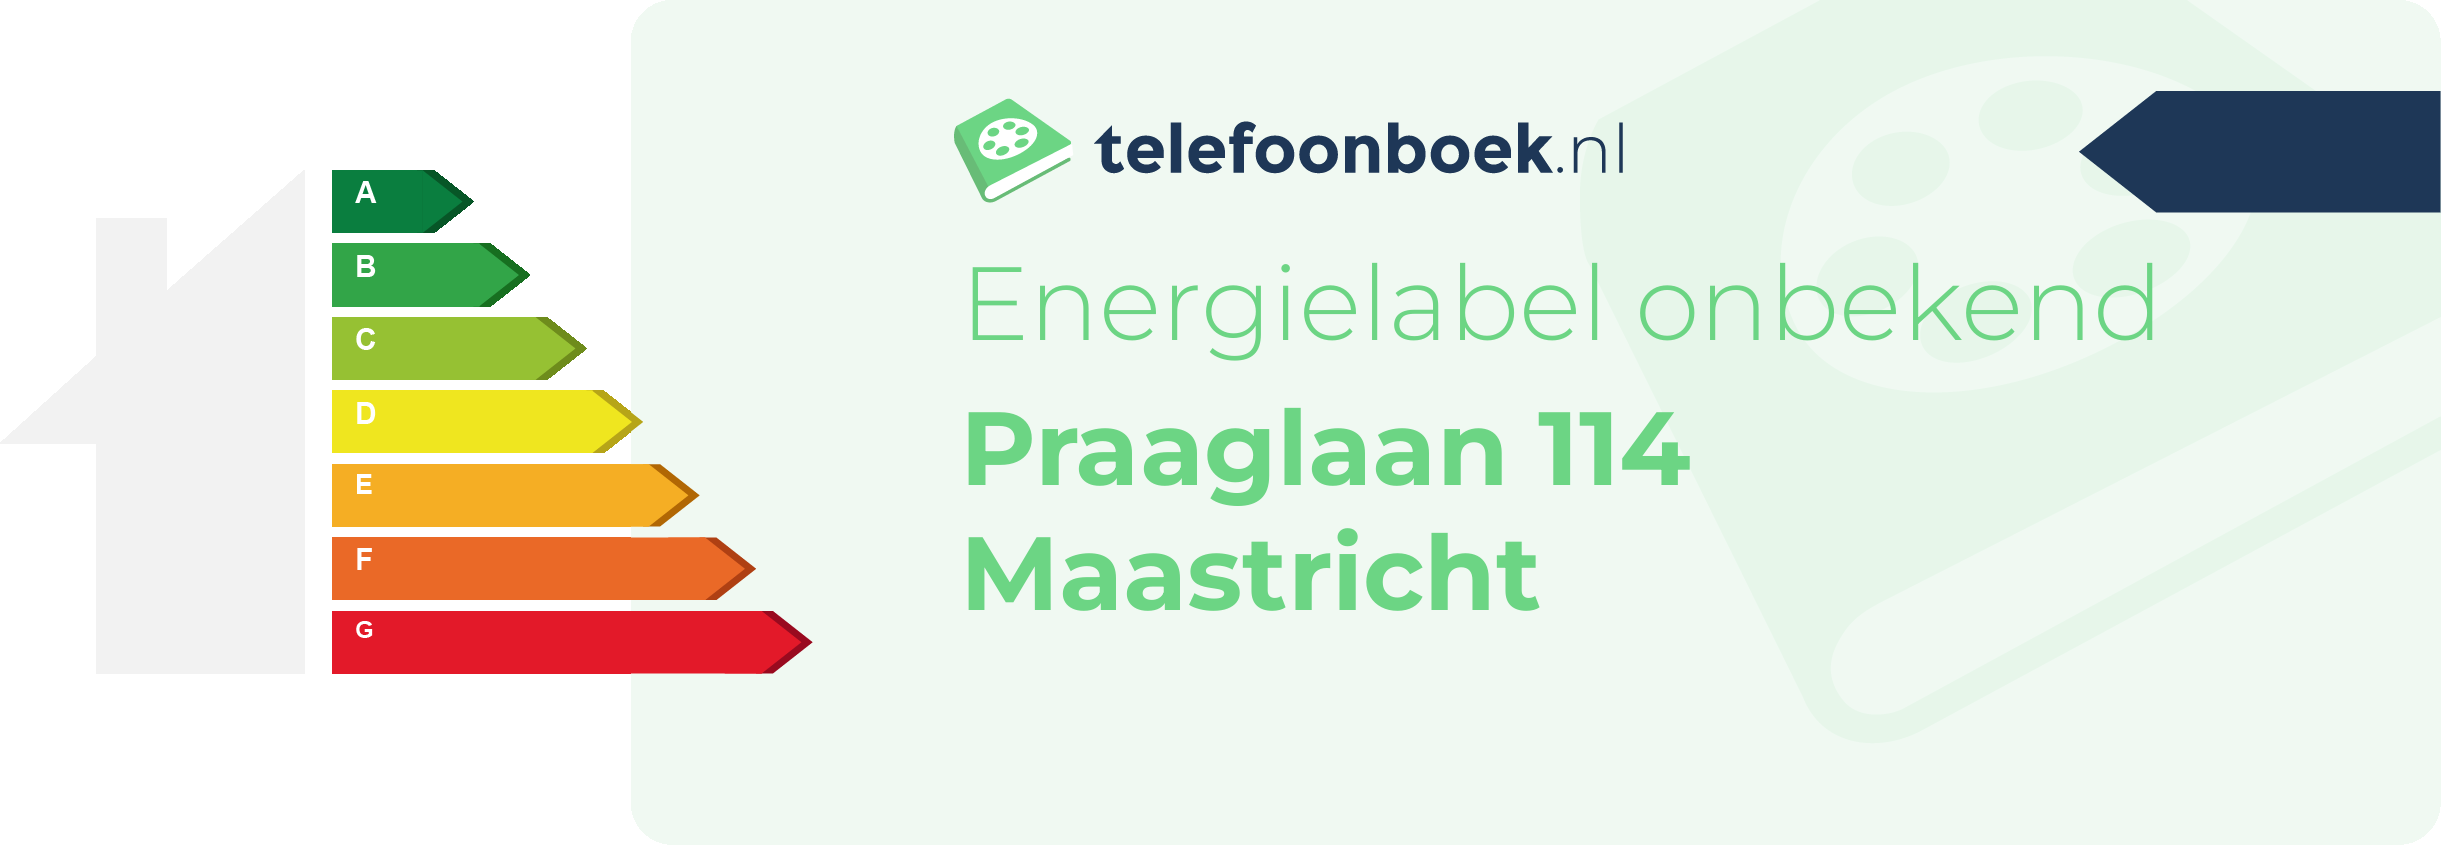 Energielabel Praaglaan 114 Maastricht